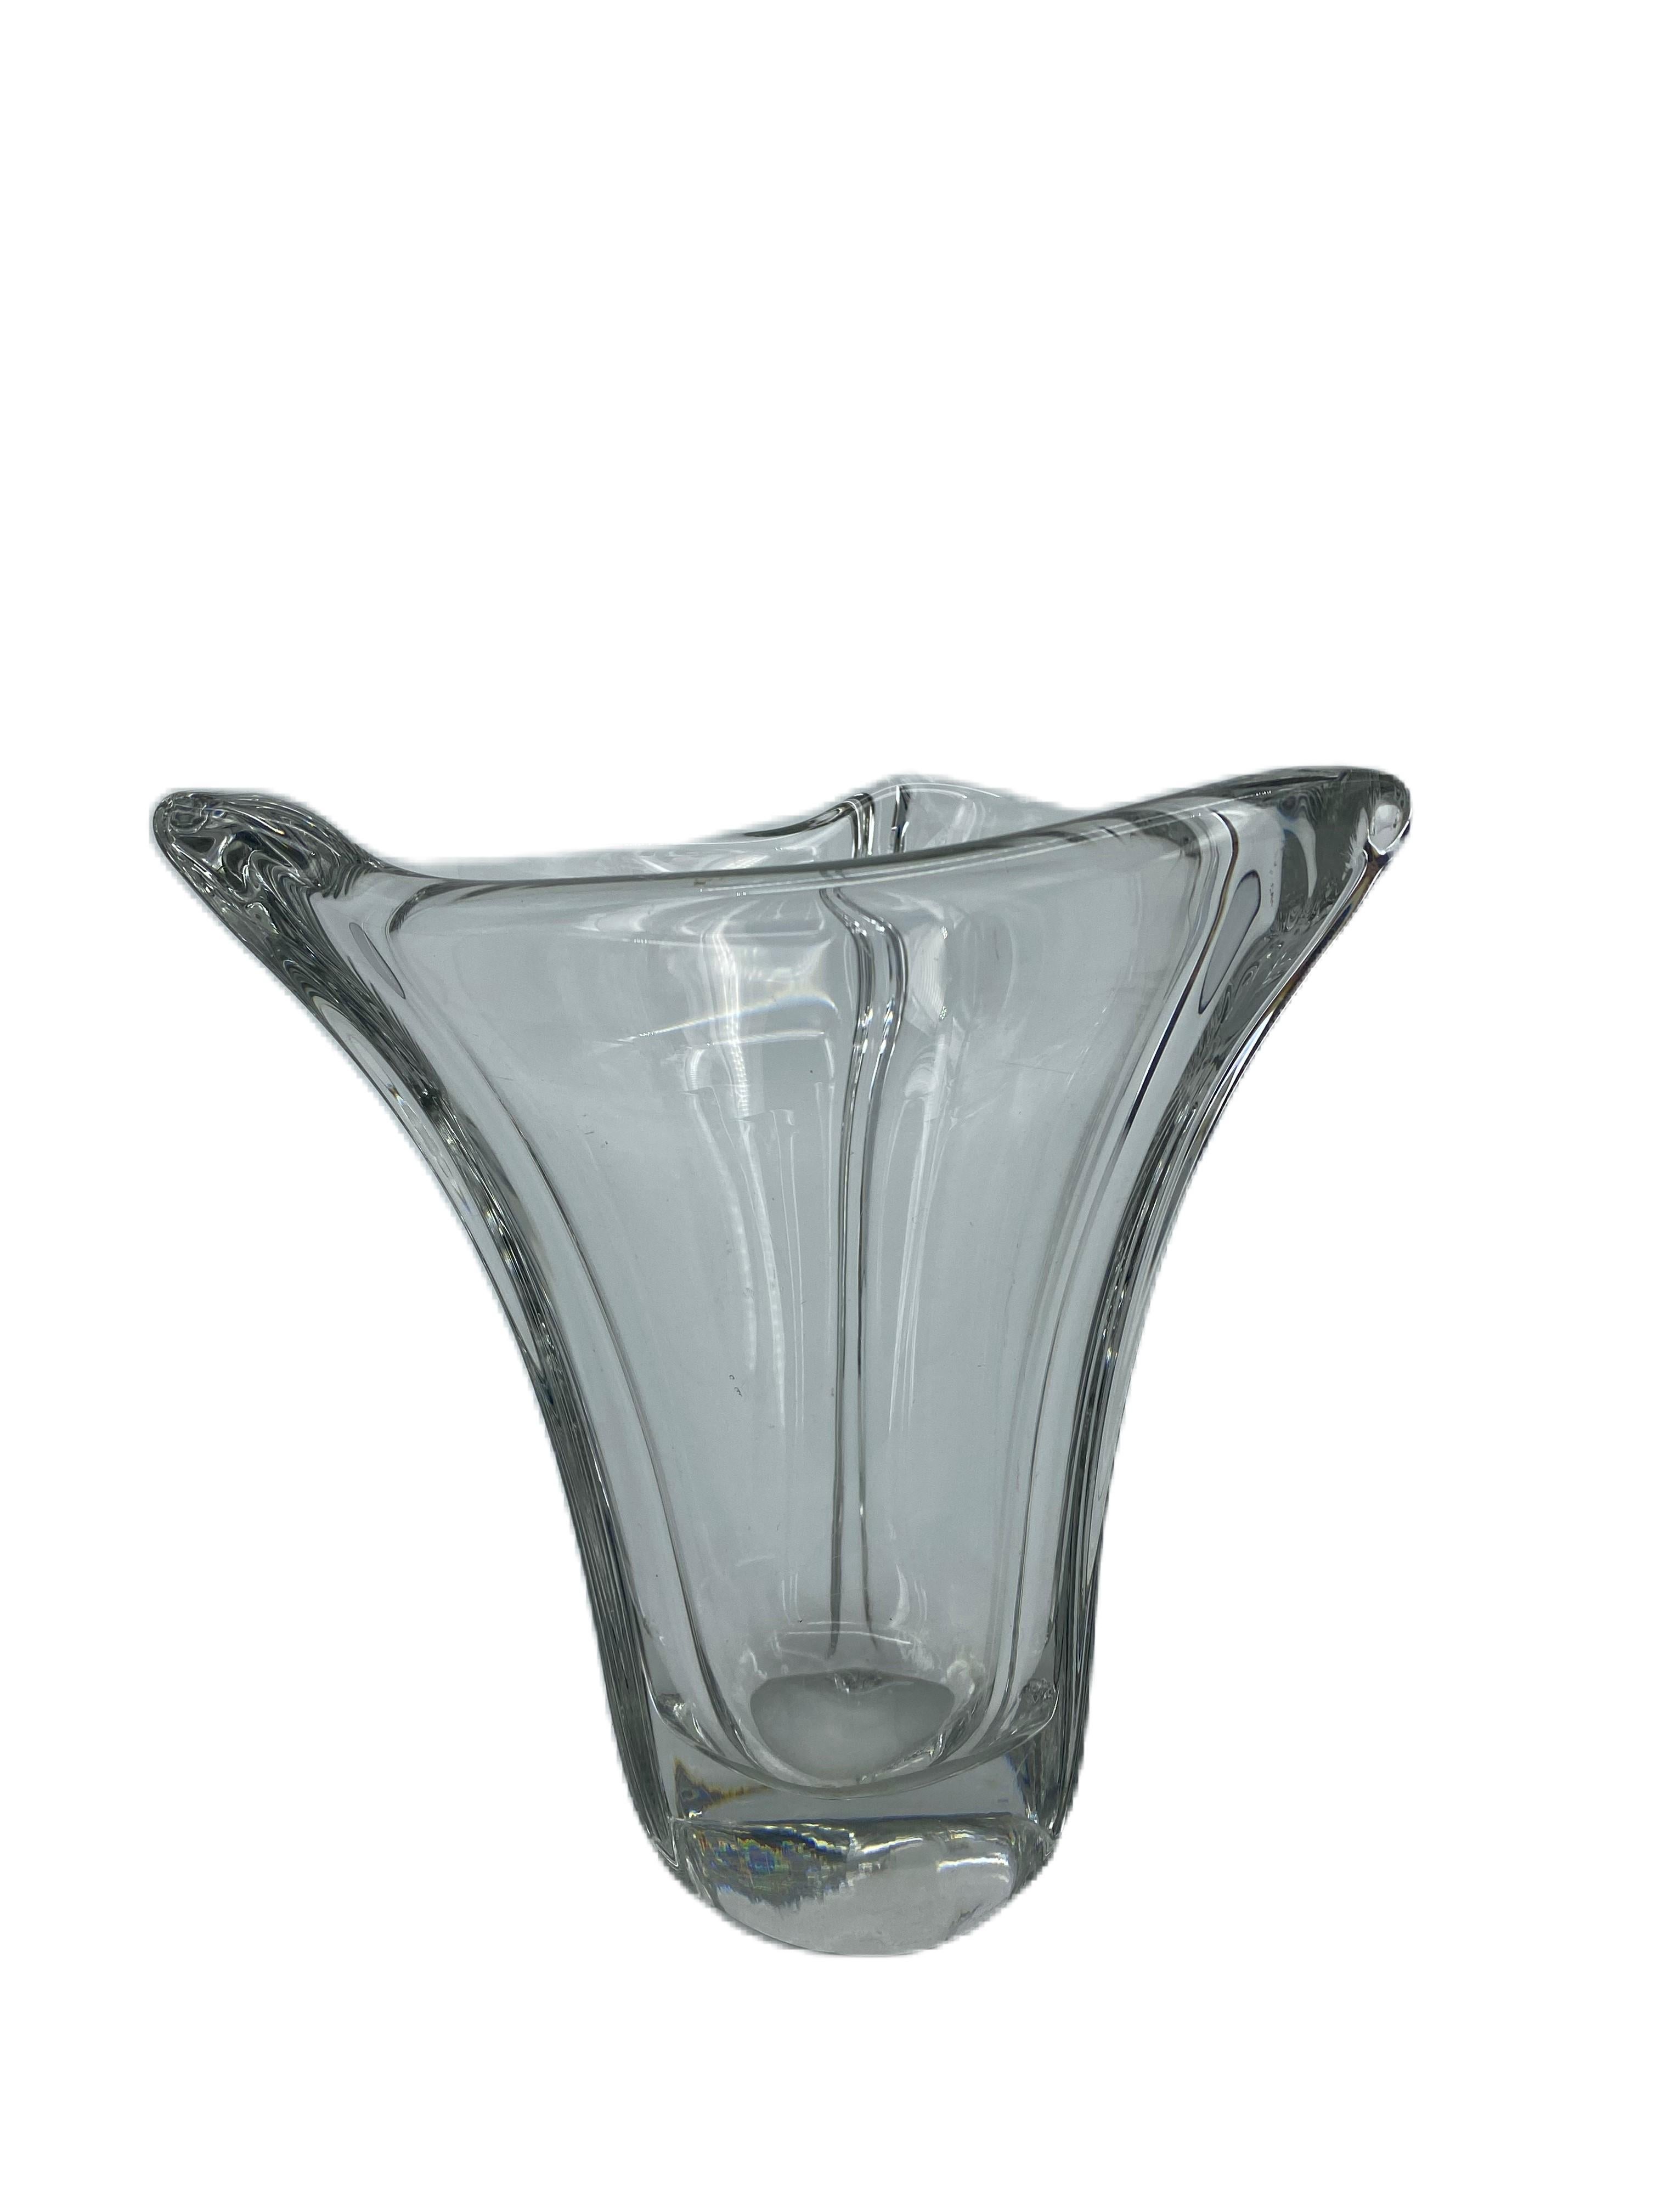 Vase français gravé Daum Nancy, France, années 50

Signé sur la base par la prestigieuse société française Daum. Cette marque provient d'une ancienne usine que Jean Daum (1825 - 1885), expatrié alsacien depuis 1870, avait achetée à Nancy en 1875.